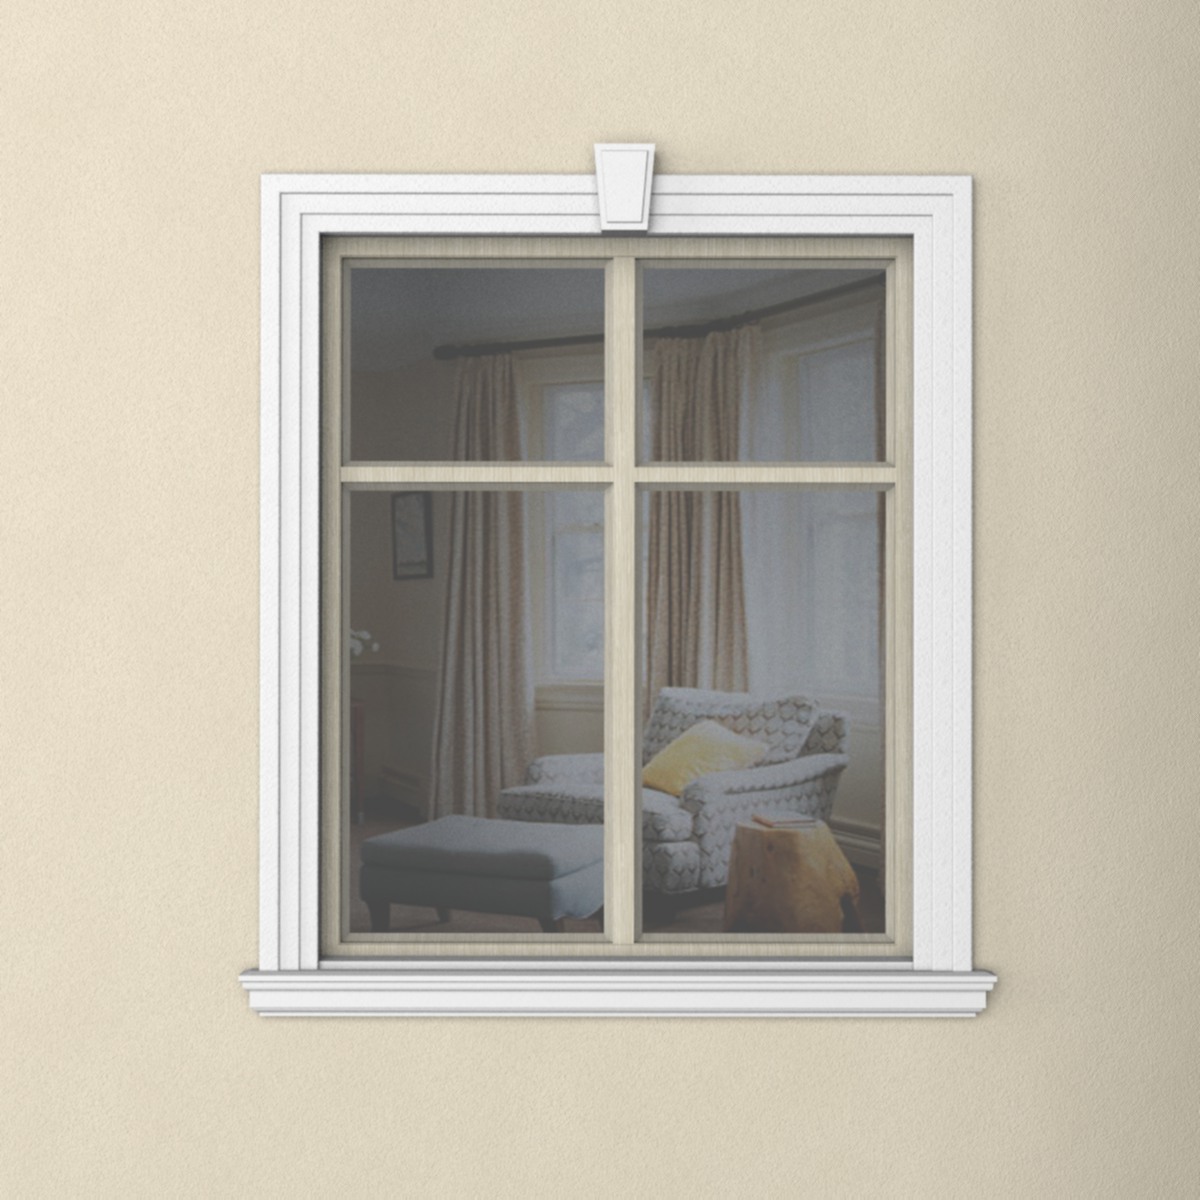 Прямоугольное окно с наличником из пенопласта